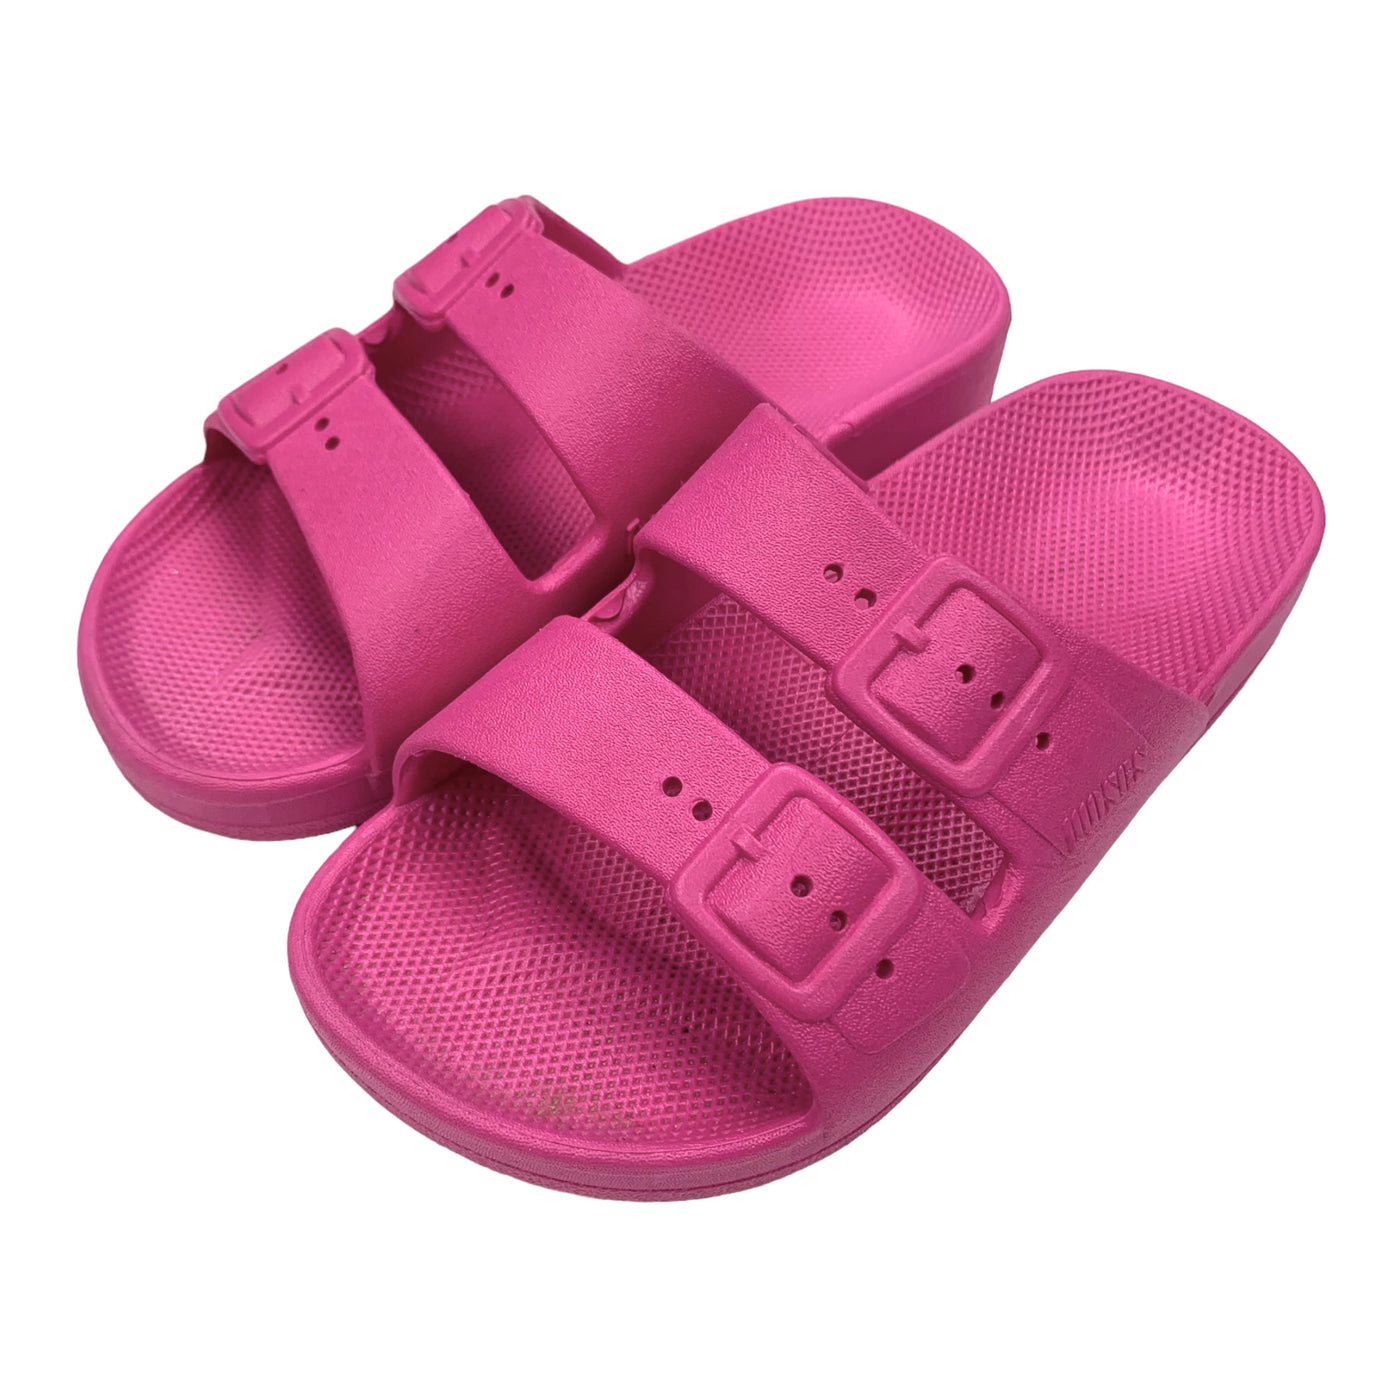 Mozes sandals pink size 26-27